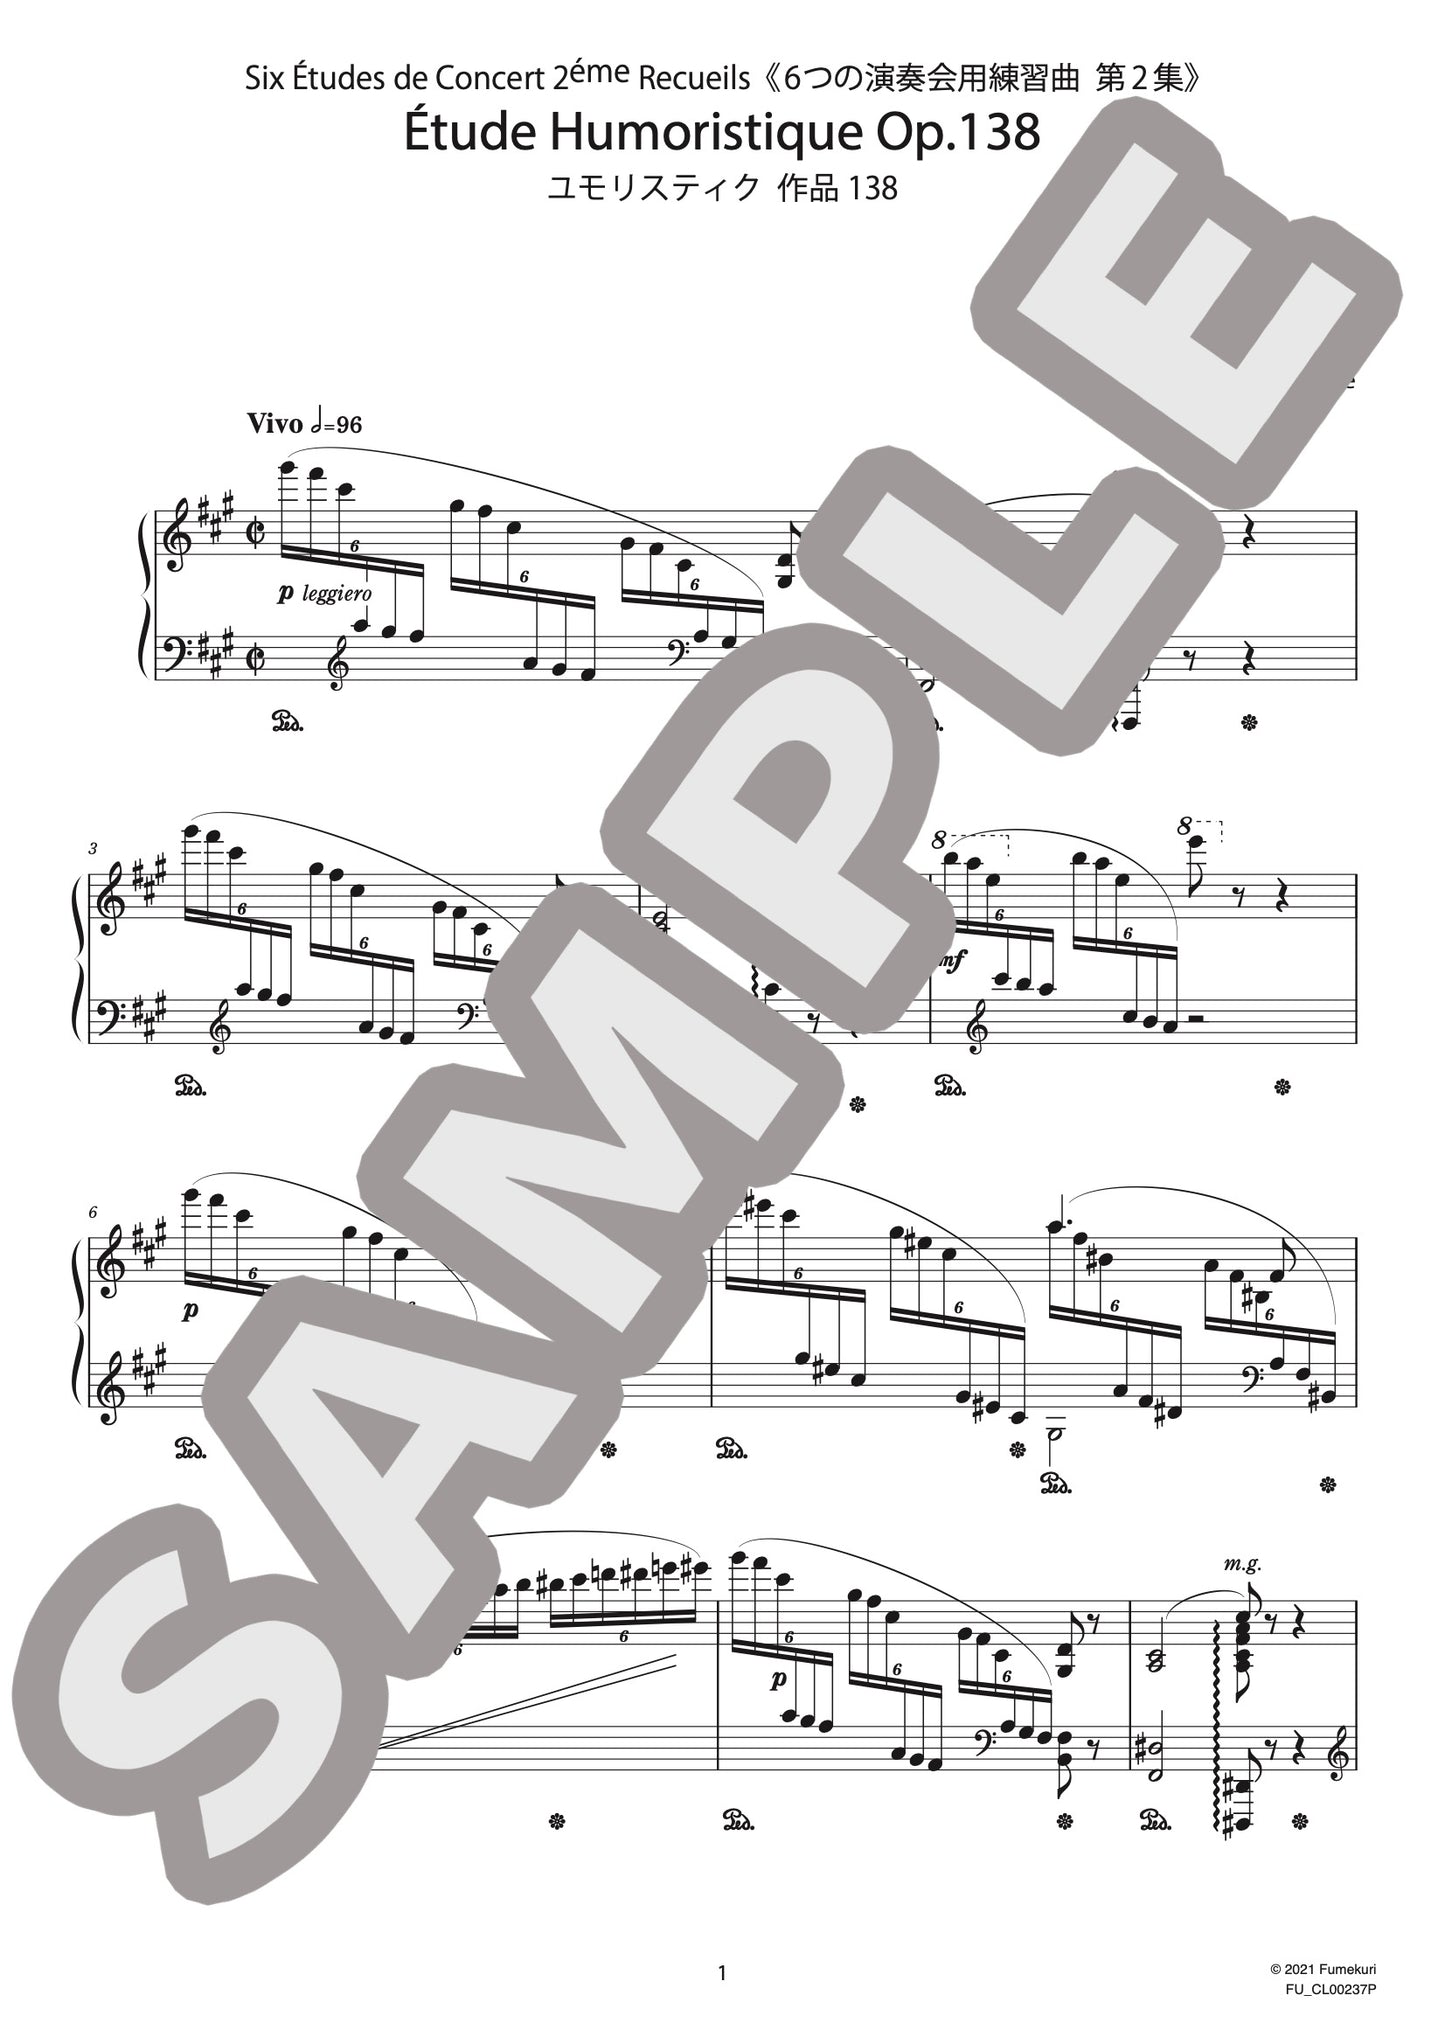 6つの演奏会用練習曲 第2集 ユモリスティク 作品138（CHAMINADE) / クラシック・オリジナル楽曲【中上級】